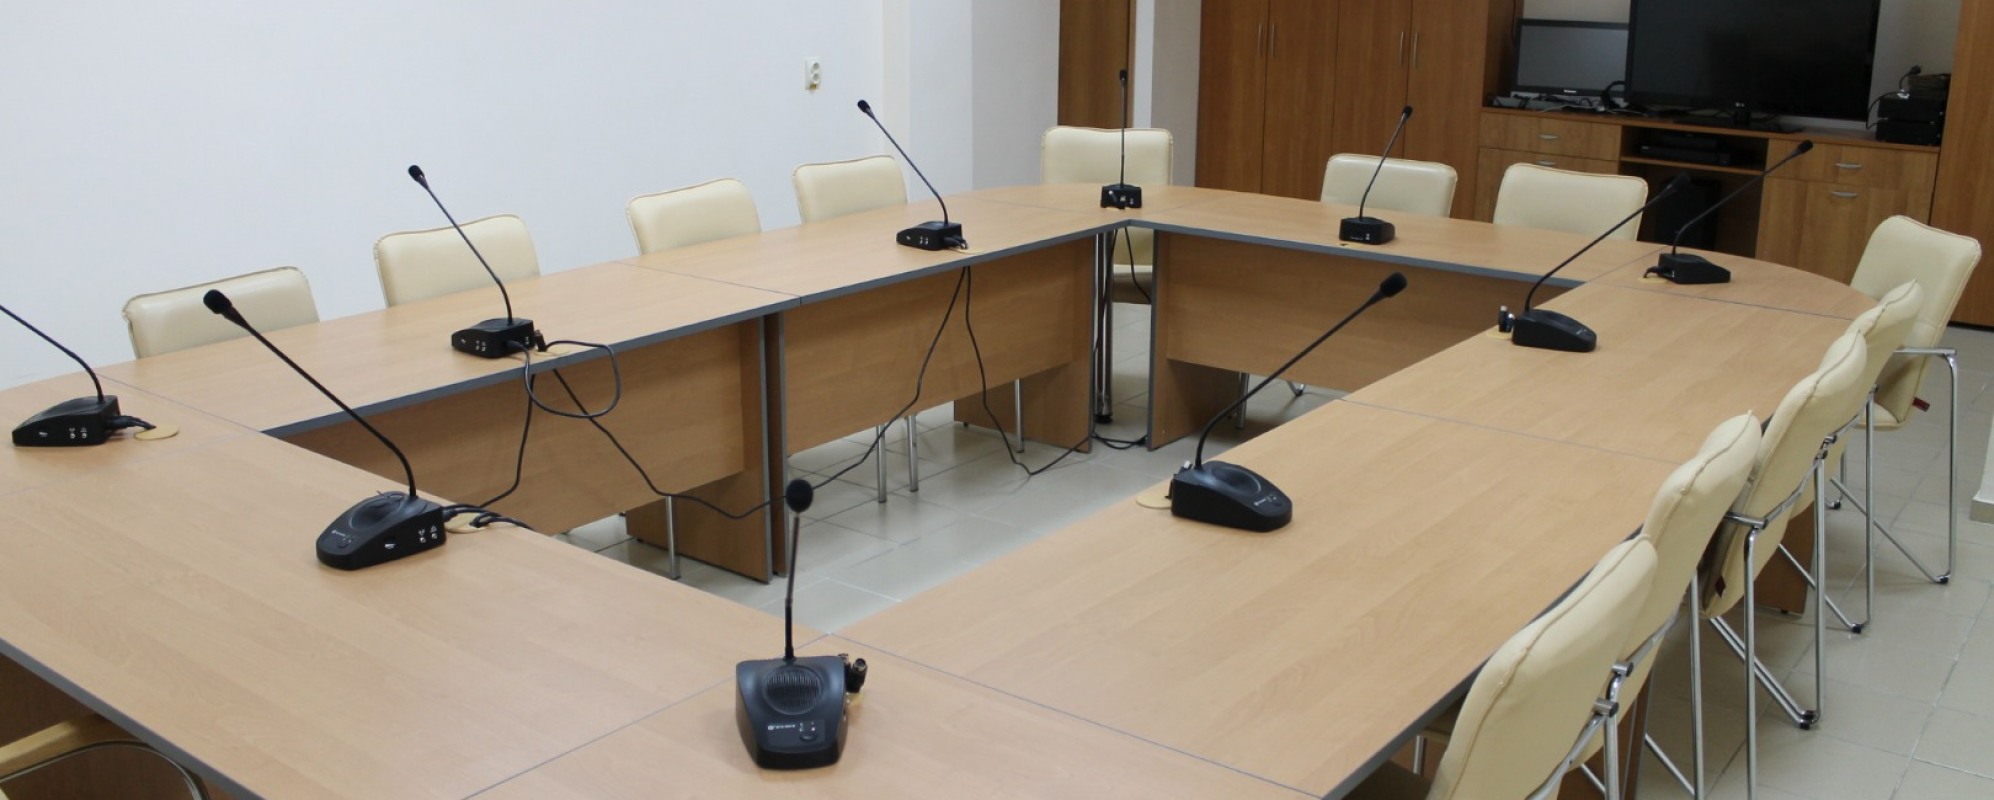 Фотографии комнаты для переговоров Технопарка Яблочков